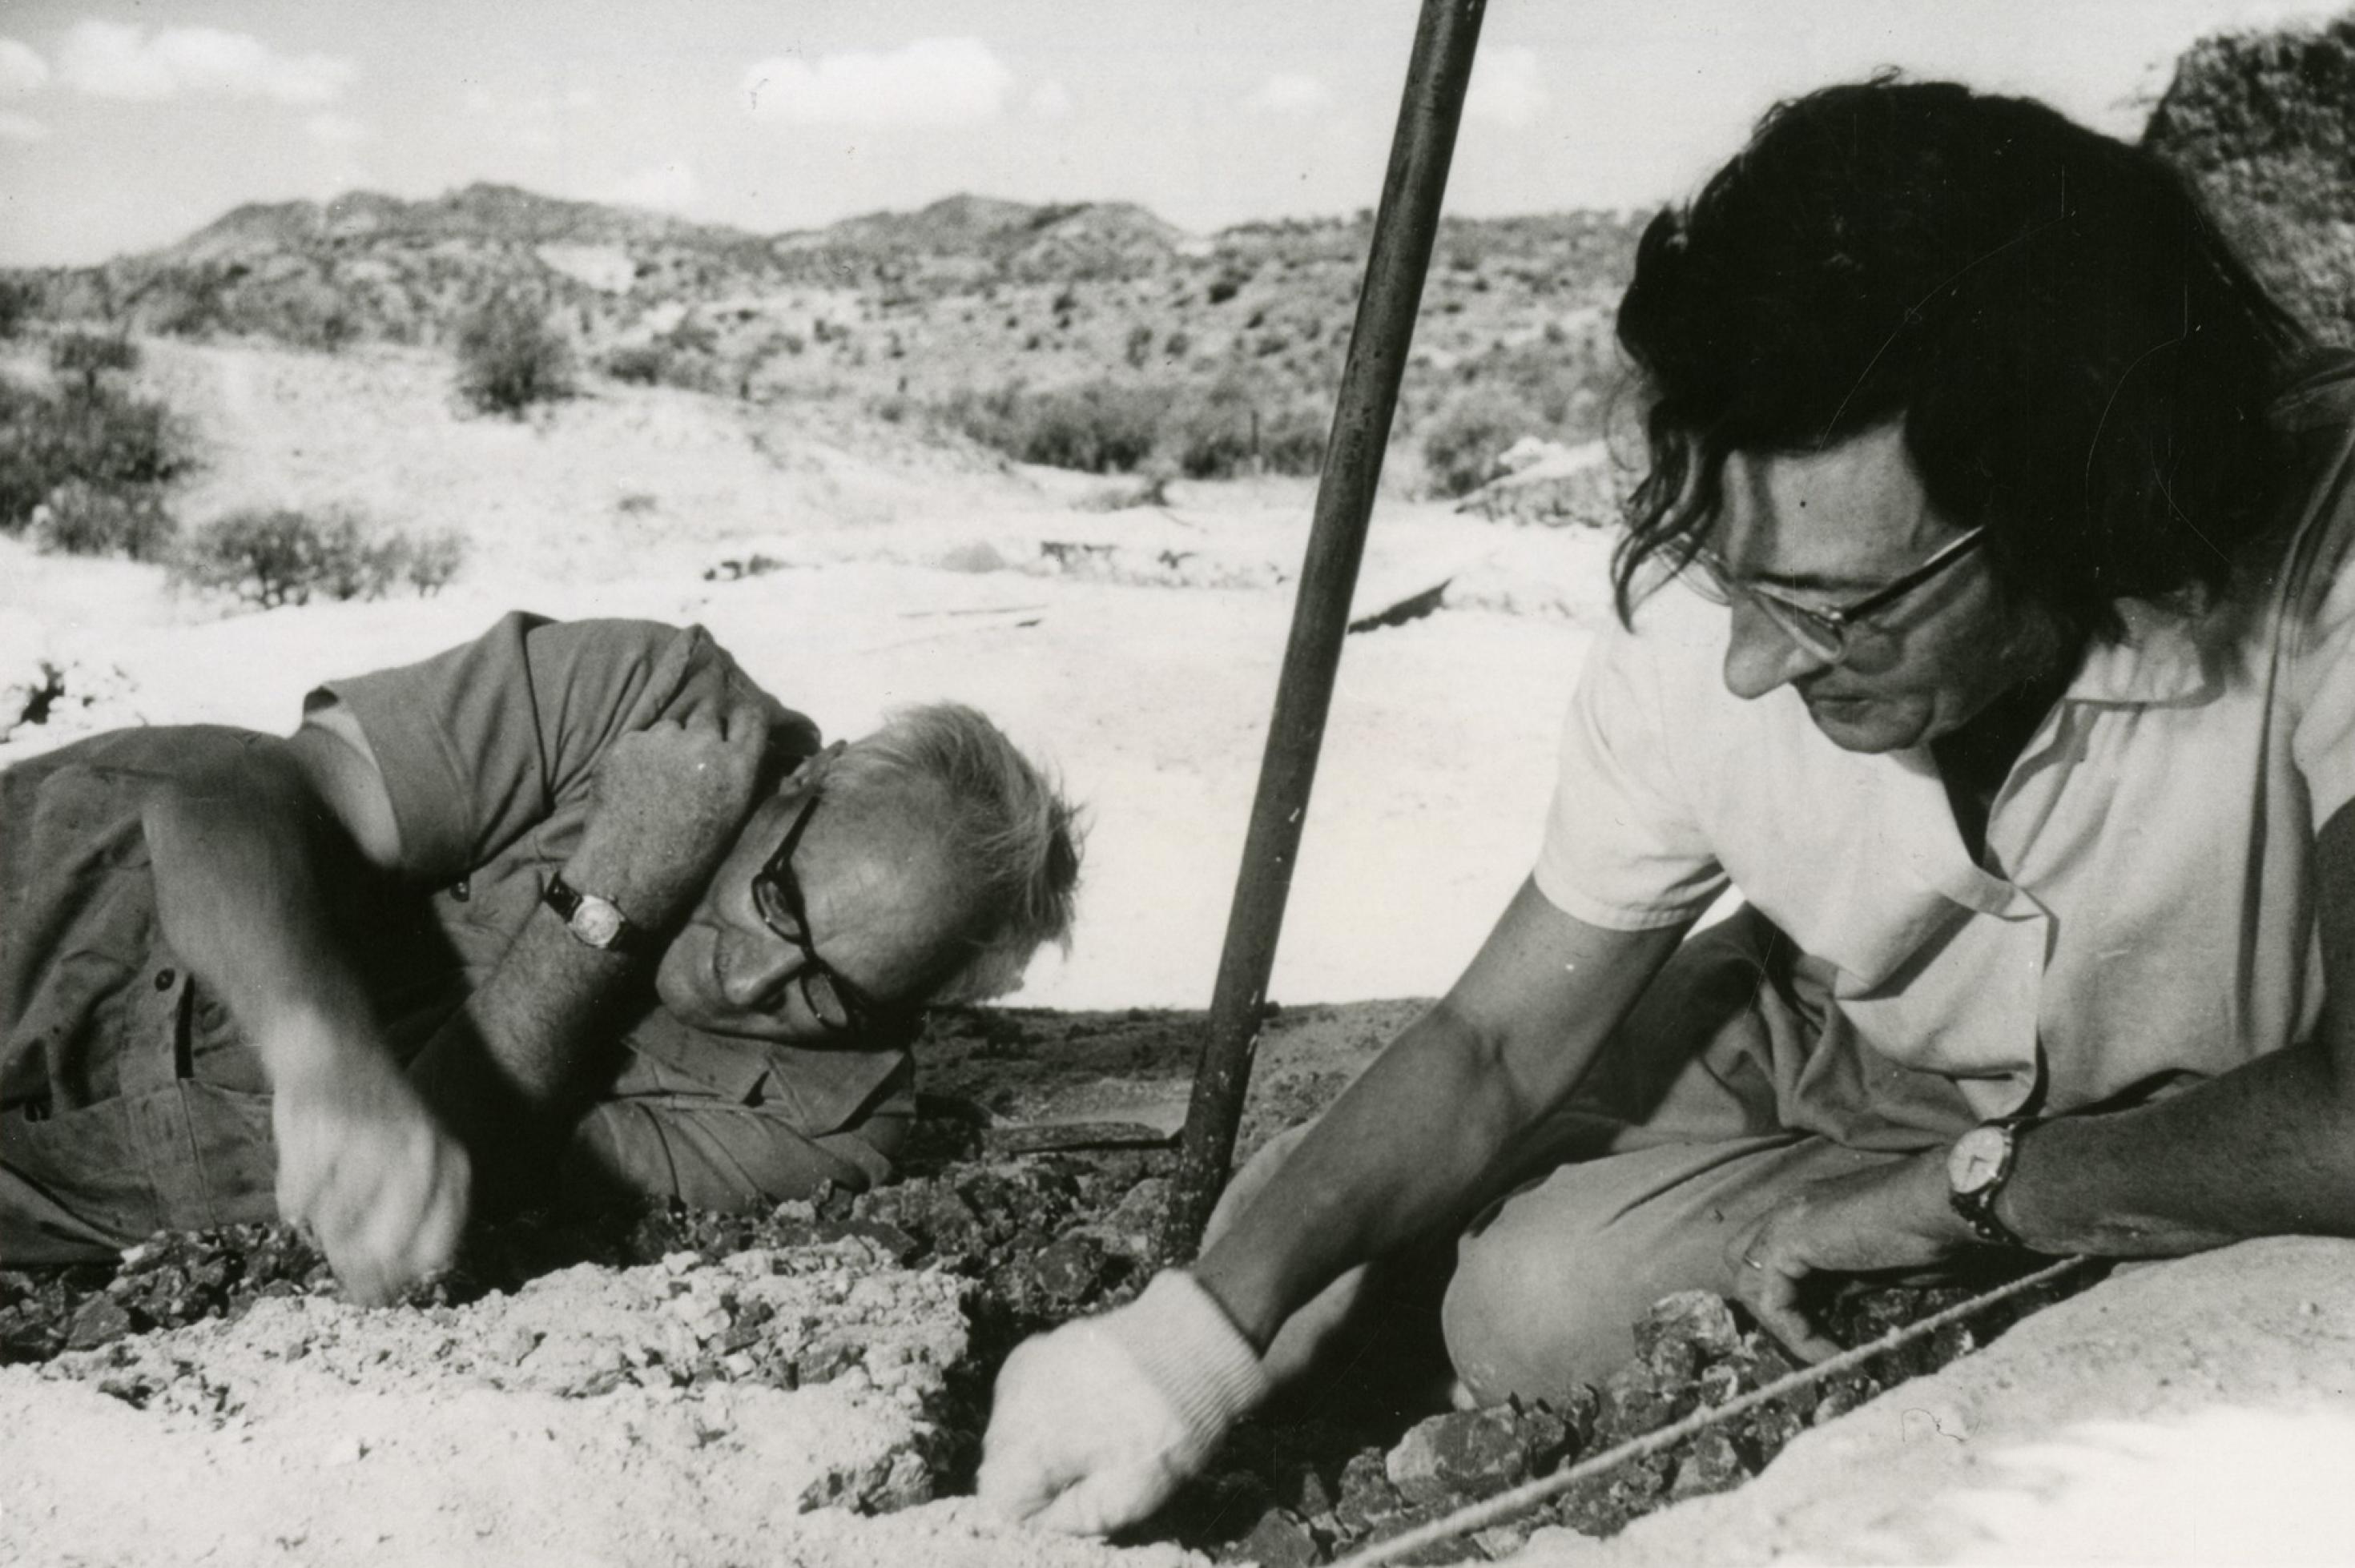 Auf dem sandigen Boden in der Olduvai-Schlucht in Tansania liegen und knien Louis und Mary Leakey, um nach Fossilien von Urmenschen zu graben. Erst finden sie dort den Nussknackermenschen und später den Homo habilis, den ersten Menschen. Dieser stellte bereits Steinwerkzeuge her.